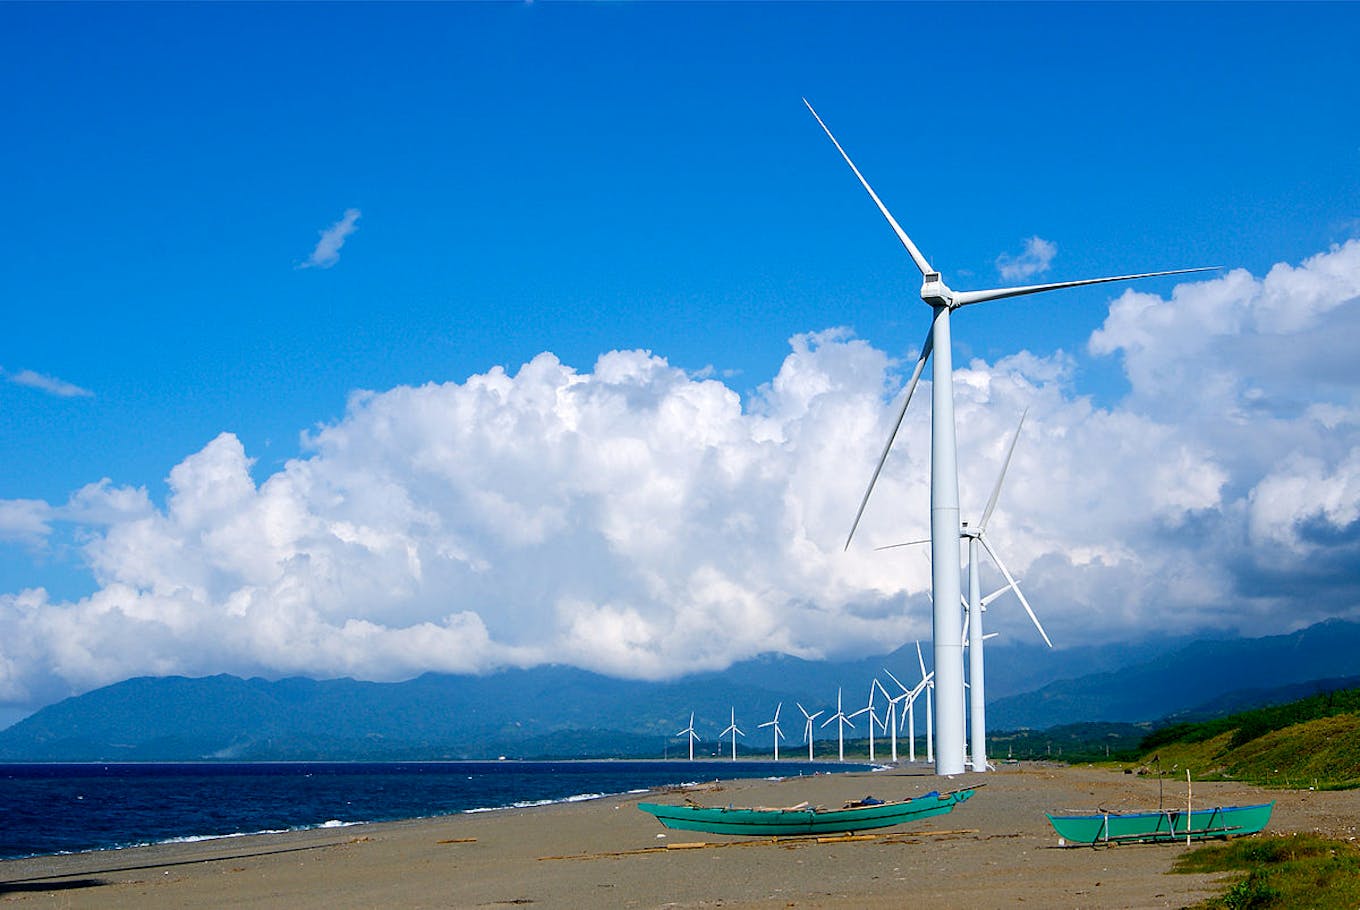 Bangui Wind Farm in Bangui, Ilocos Norte, Philippines